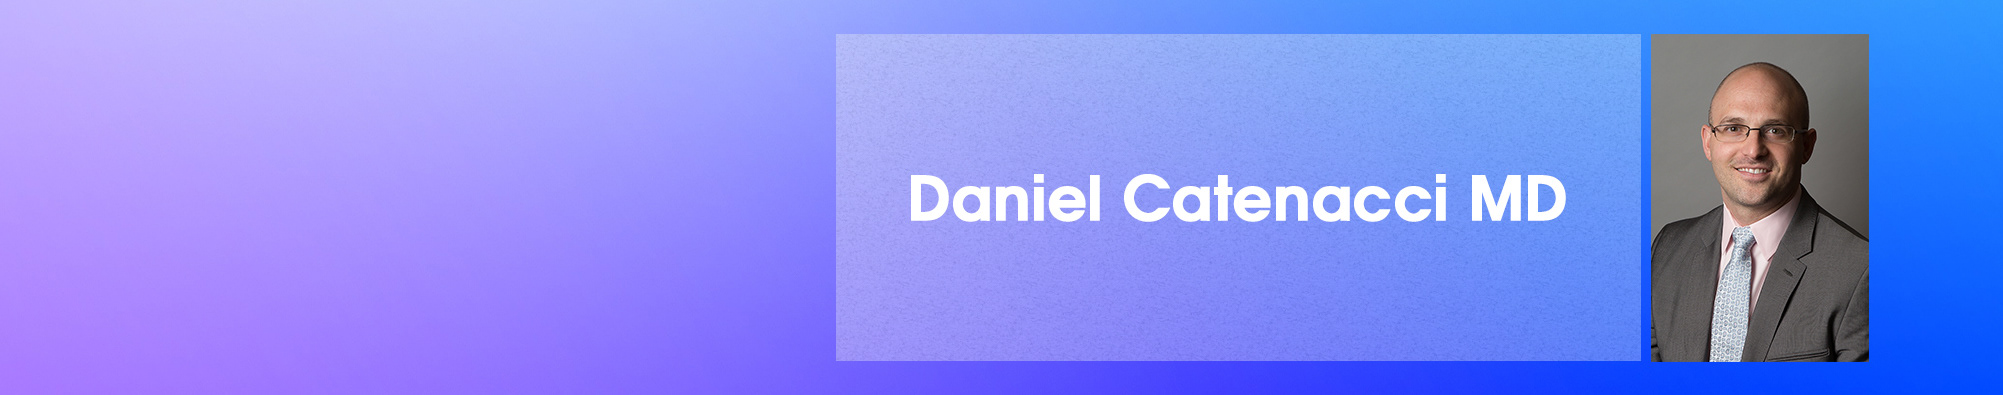 Daniel Catenacci MD's profile banner